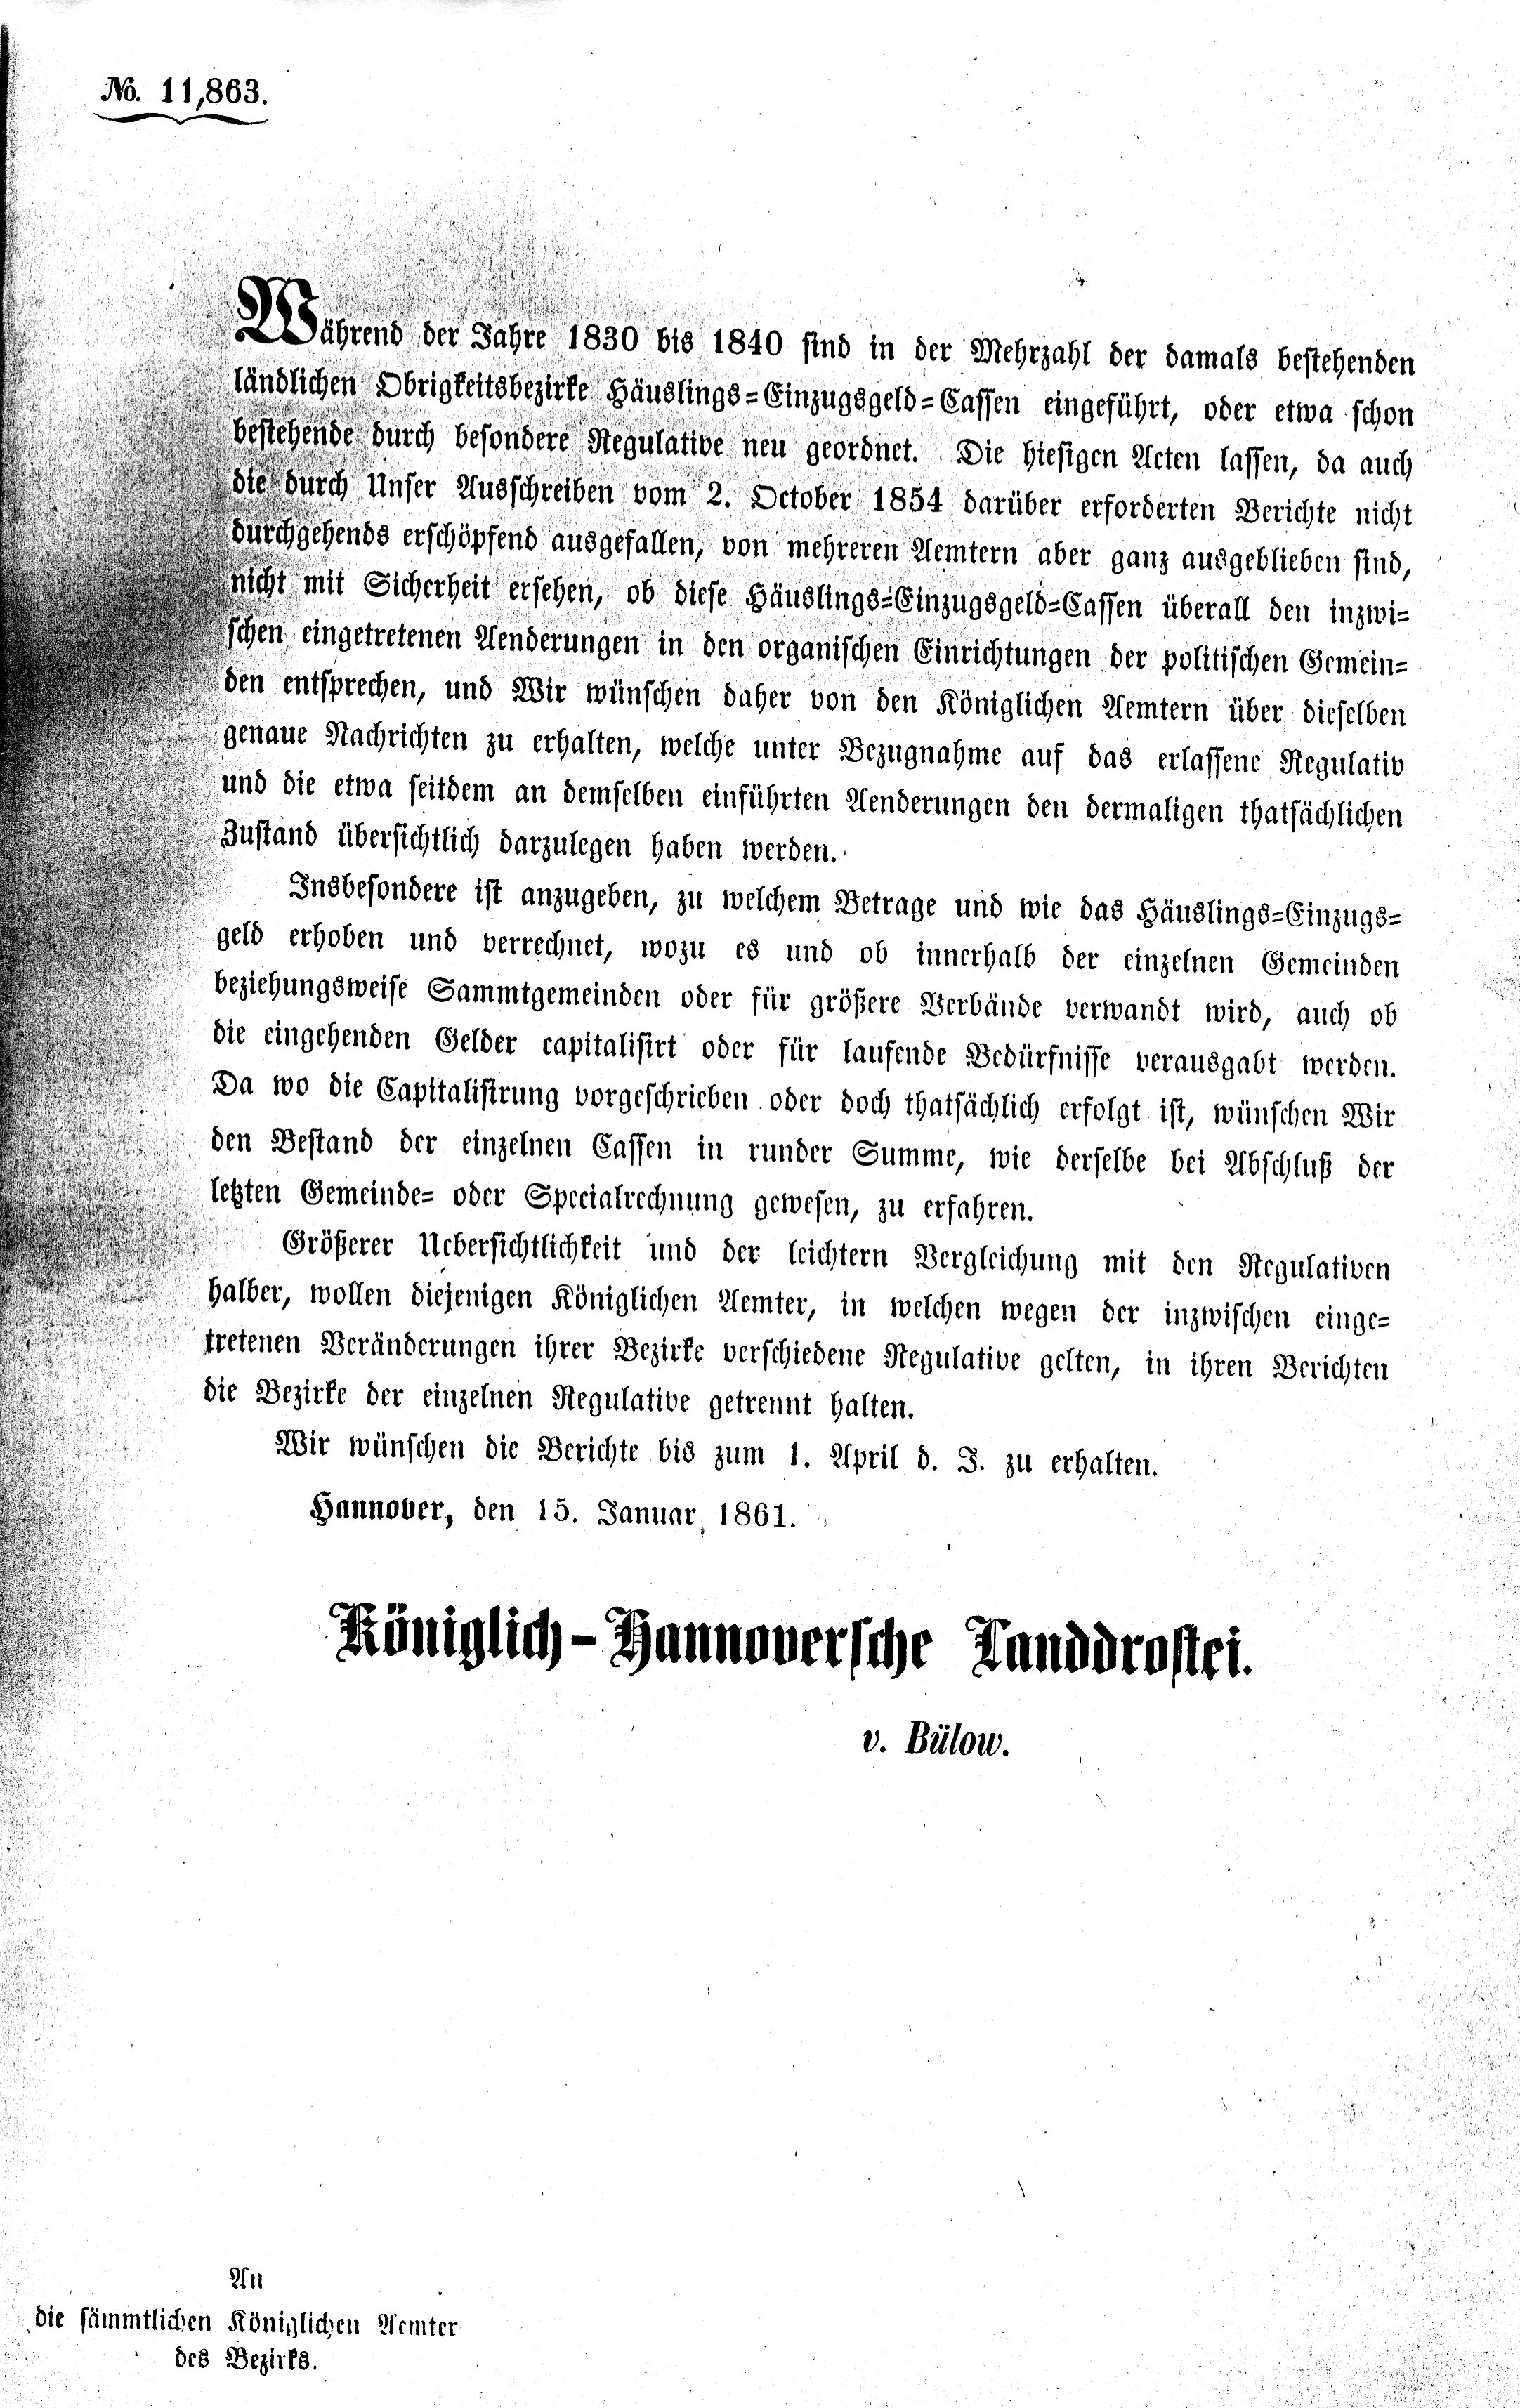 Schreiben der Königlich-Hannoverschen Landdrostei v. 1861 (Kreismuseum Syke CC BY-NC-SA)